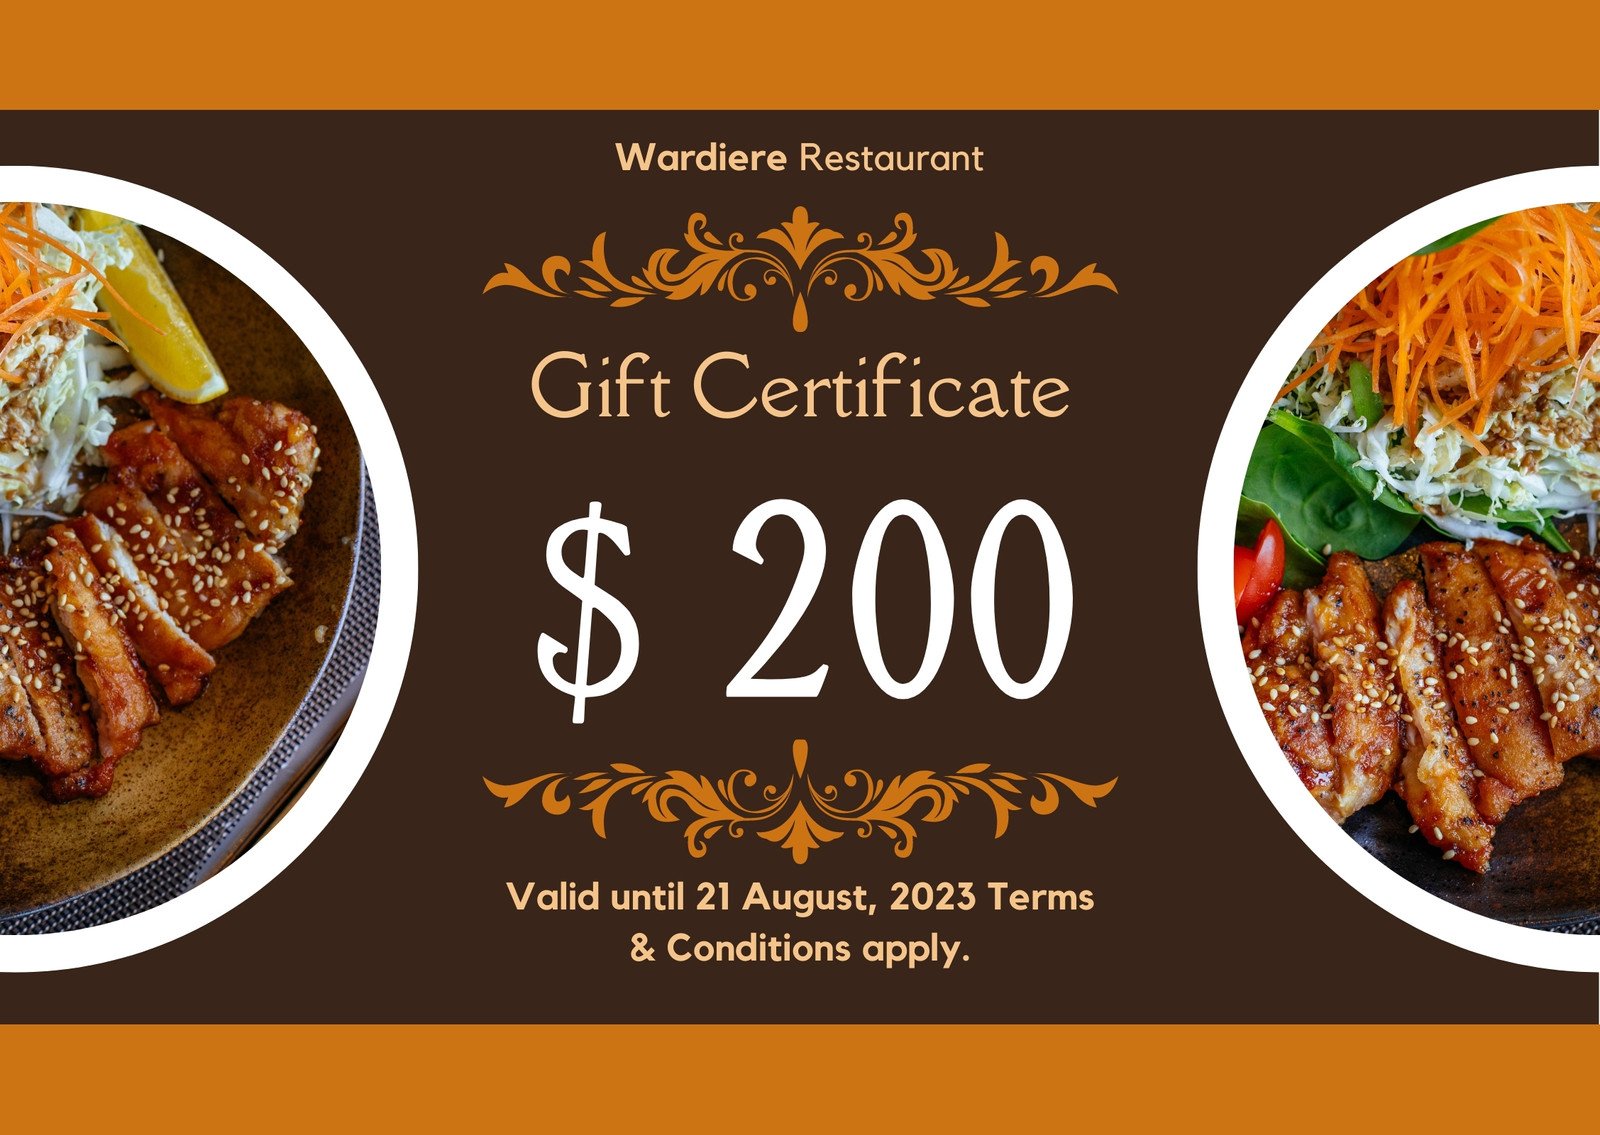 WishBone Restaurant Gift Certificate | eBay